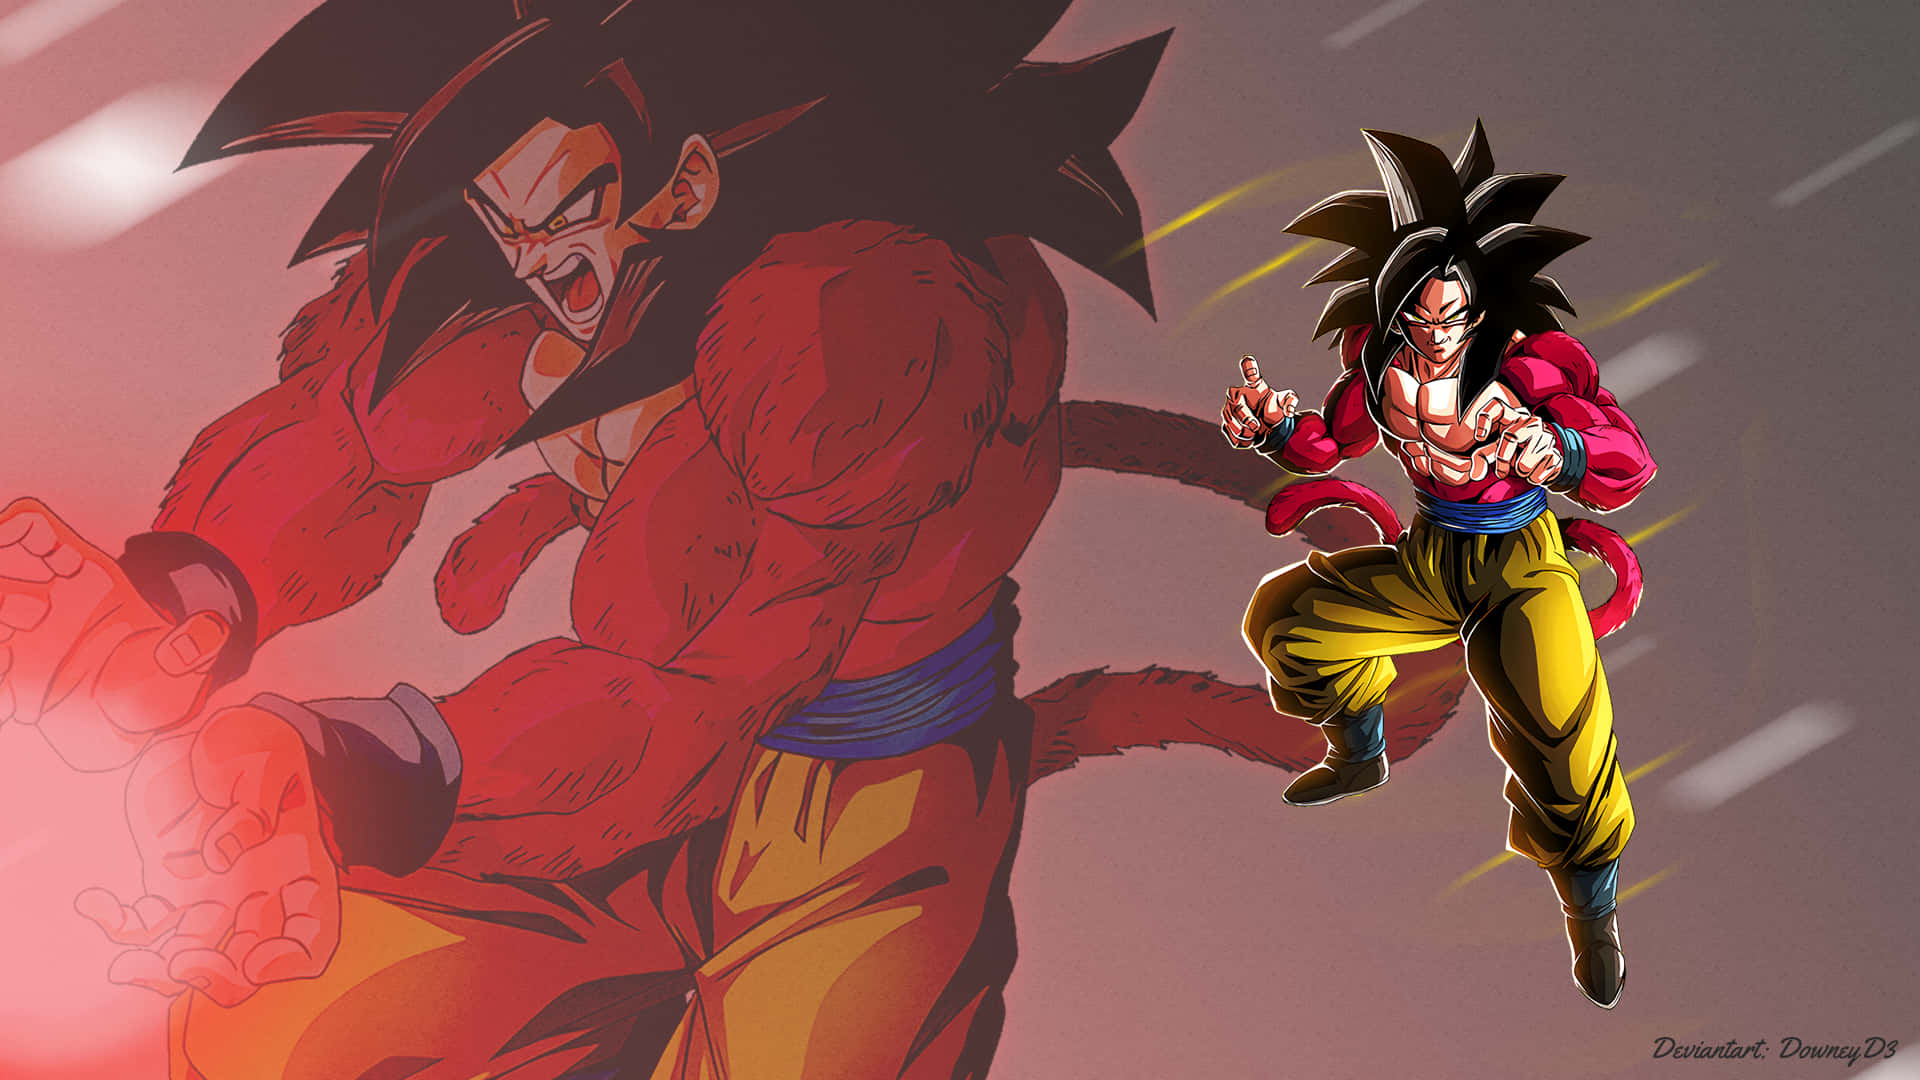 Goku Super Saiyan 4 Image Behind Wallpaper